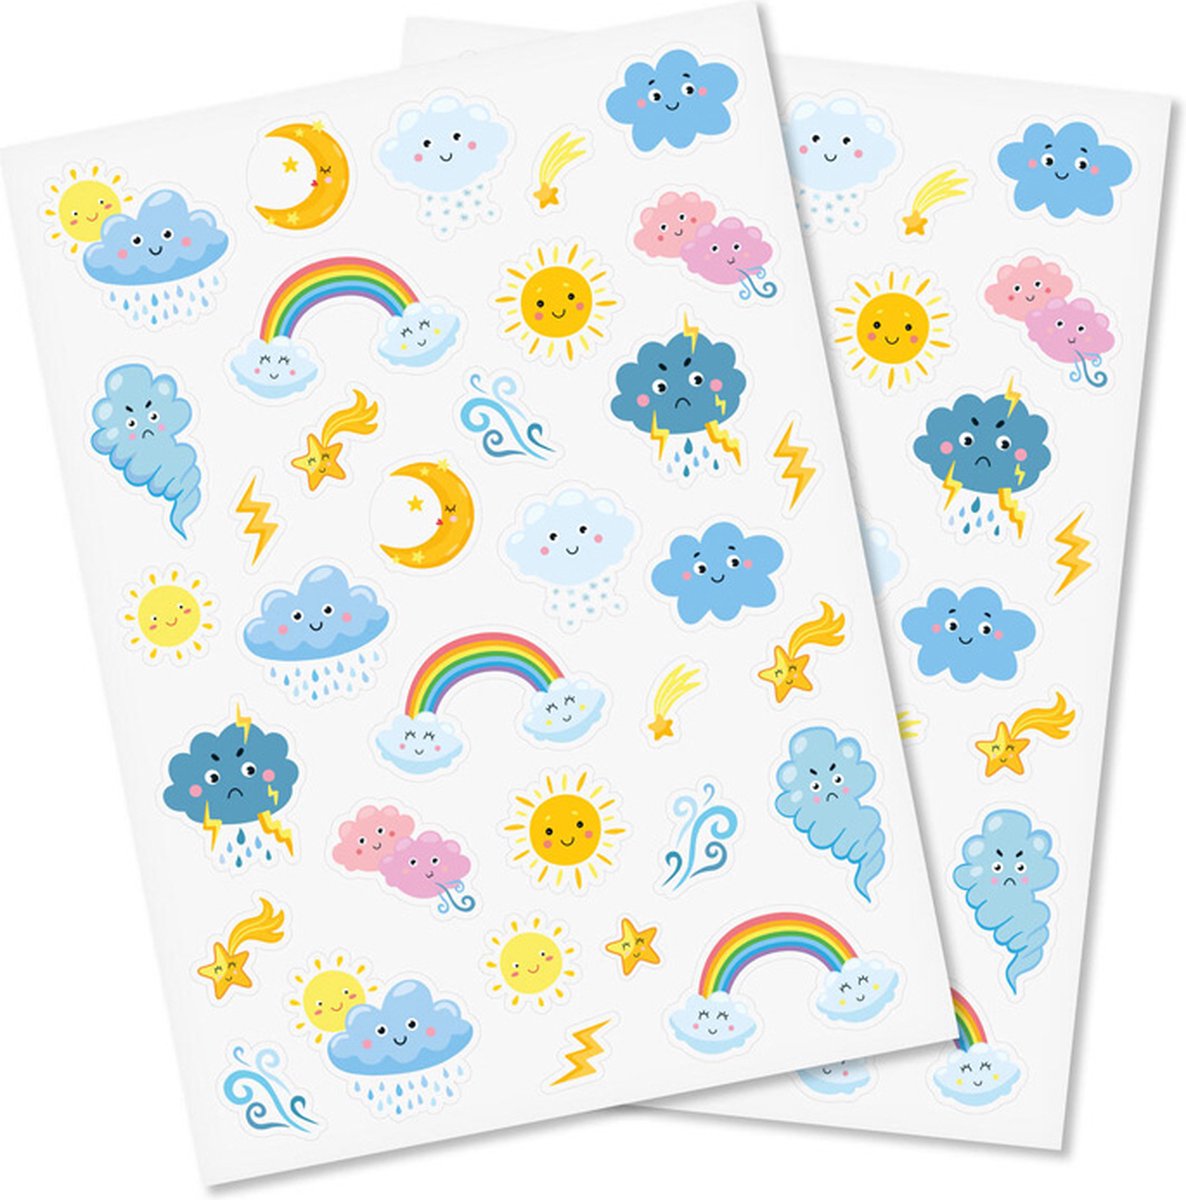 Stickers -Japanse Kawaii Weer - Regenboog/Wolken/Zon/Sterren - Scrapbook Hobby DIY - 2 Stickervellen - 1.4-5.2cm - 68 Stuks - Bi2L